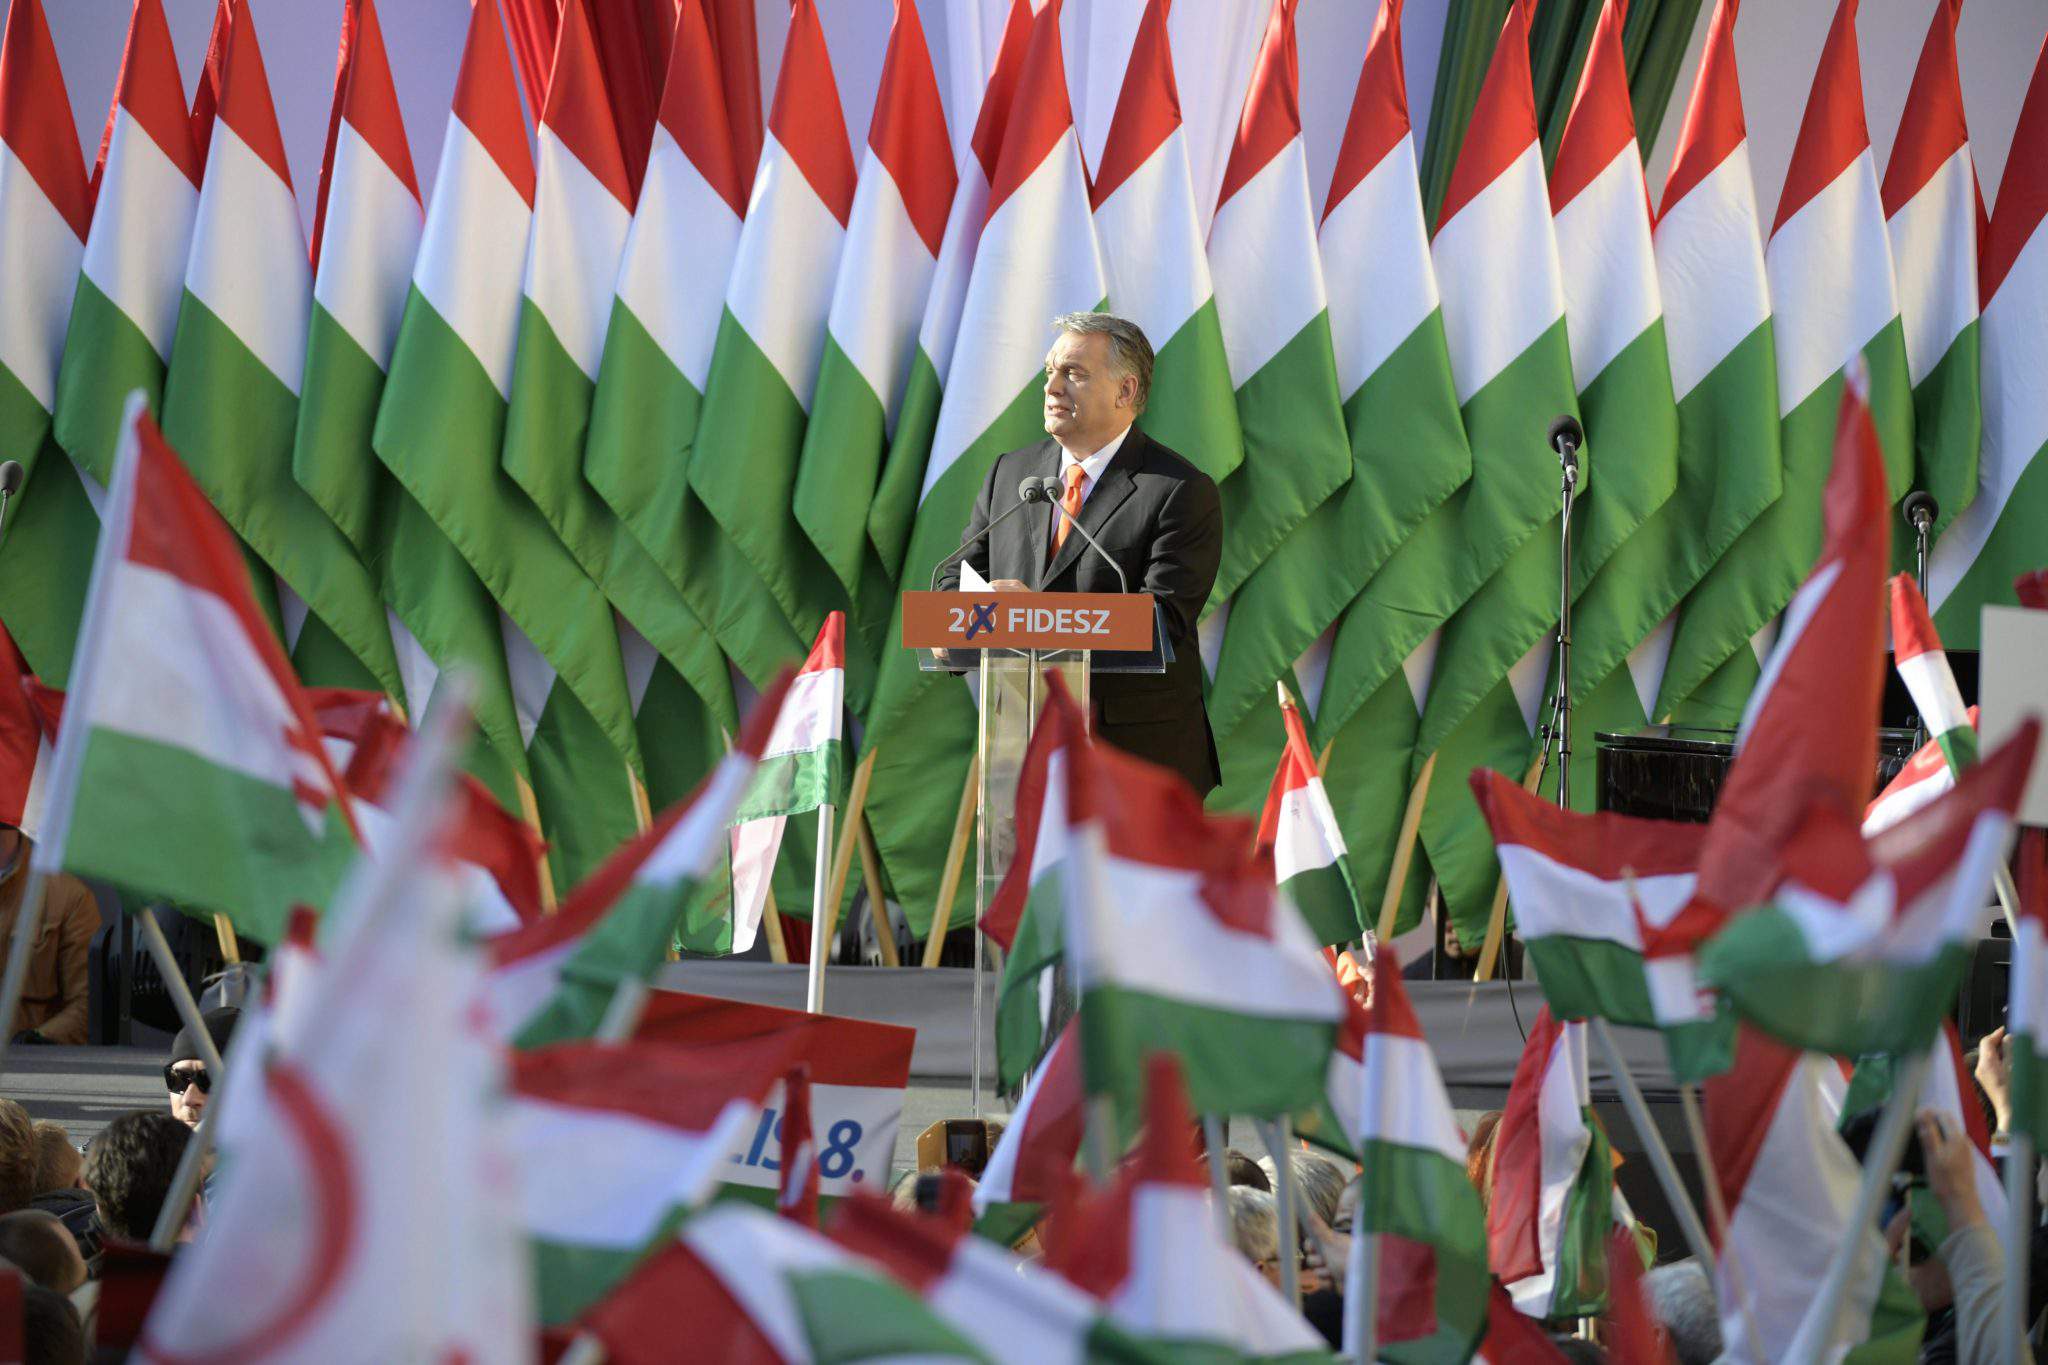 匈牙利 2018 年选举 Fidesz Viktor Orbán